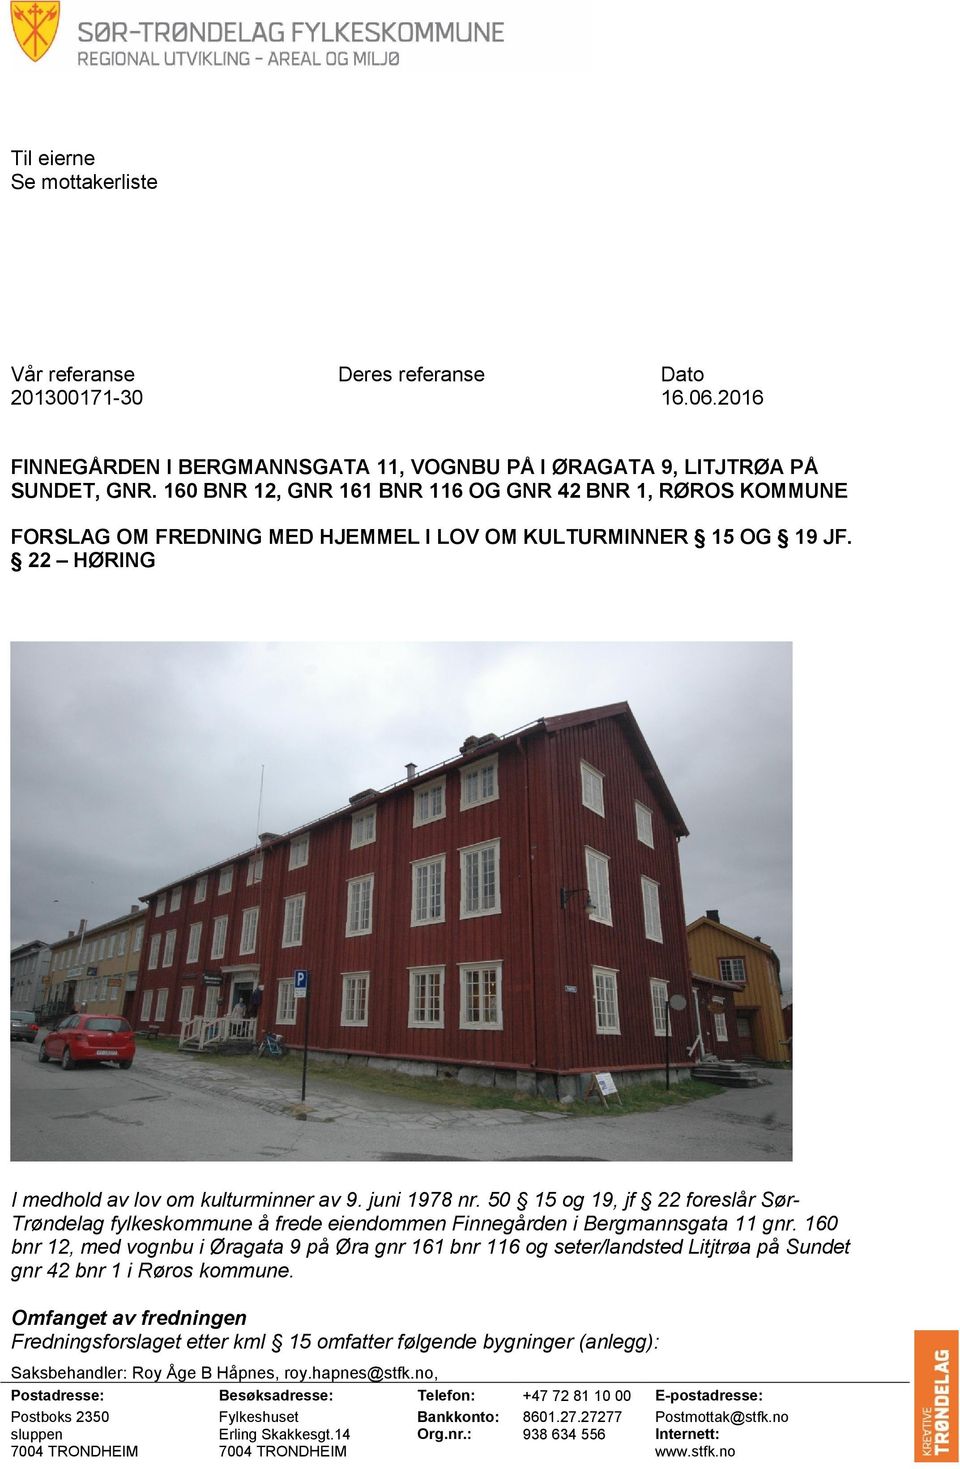 50 15 og 19, jf 22 foreslår Sør- Trøndelag fylkeskommune å frede eiendommen Finnegården i Bergmannsgata 11 gnr.